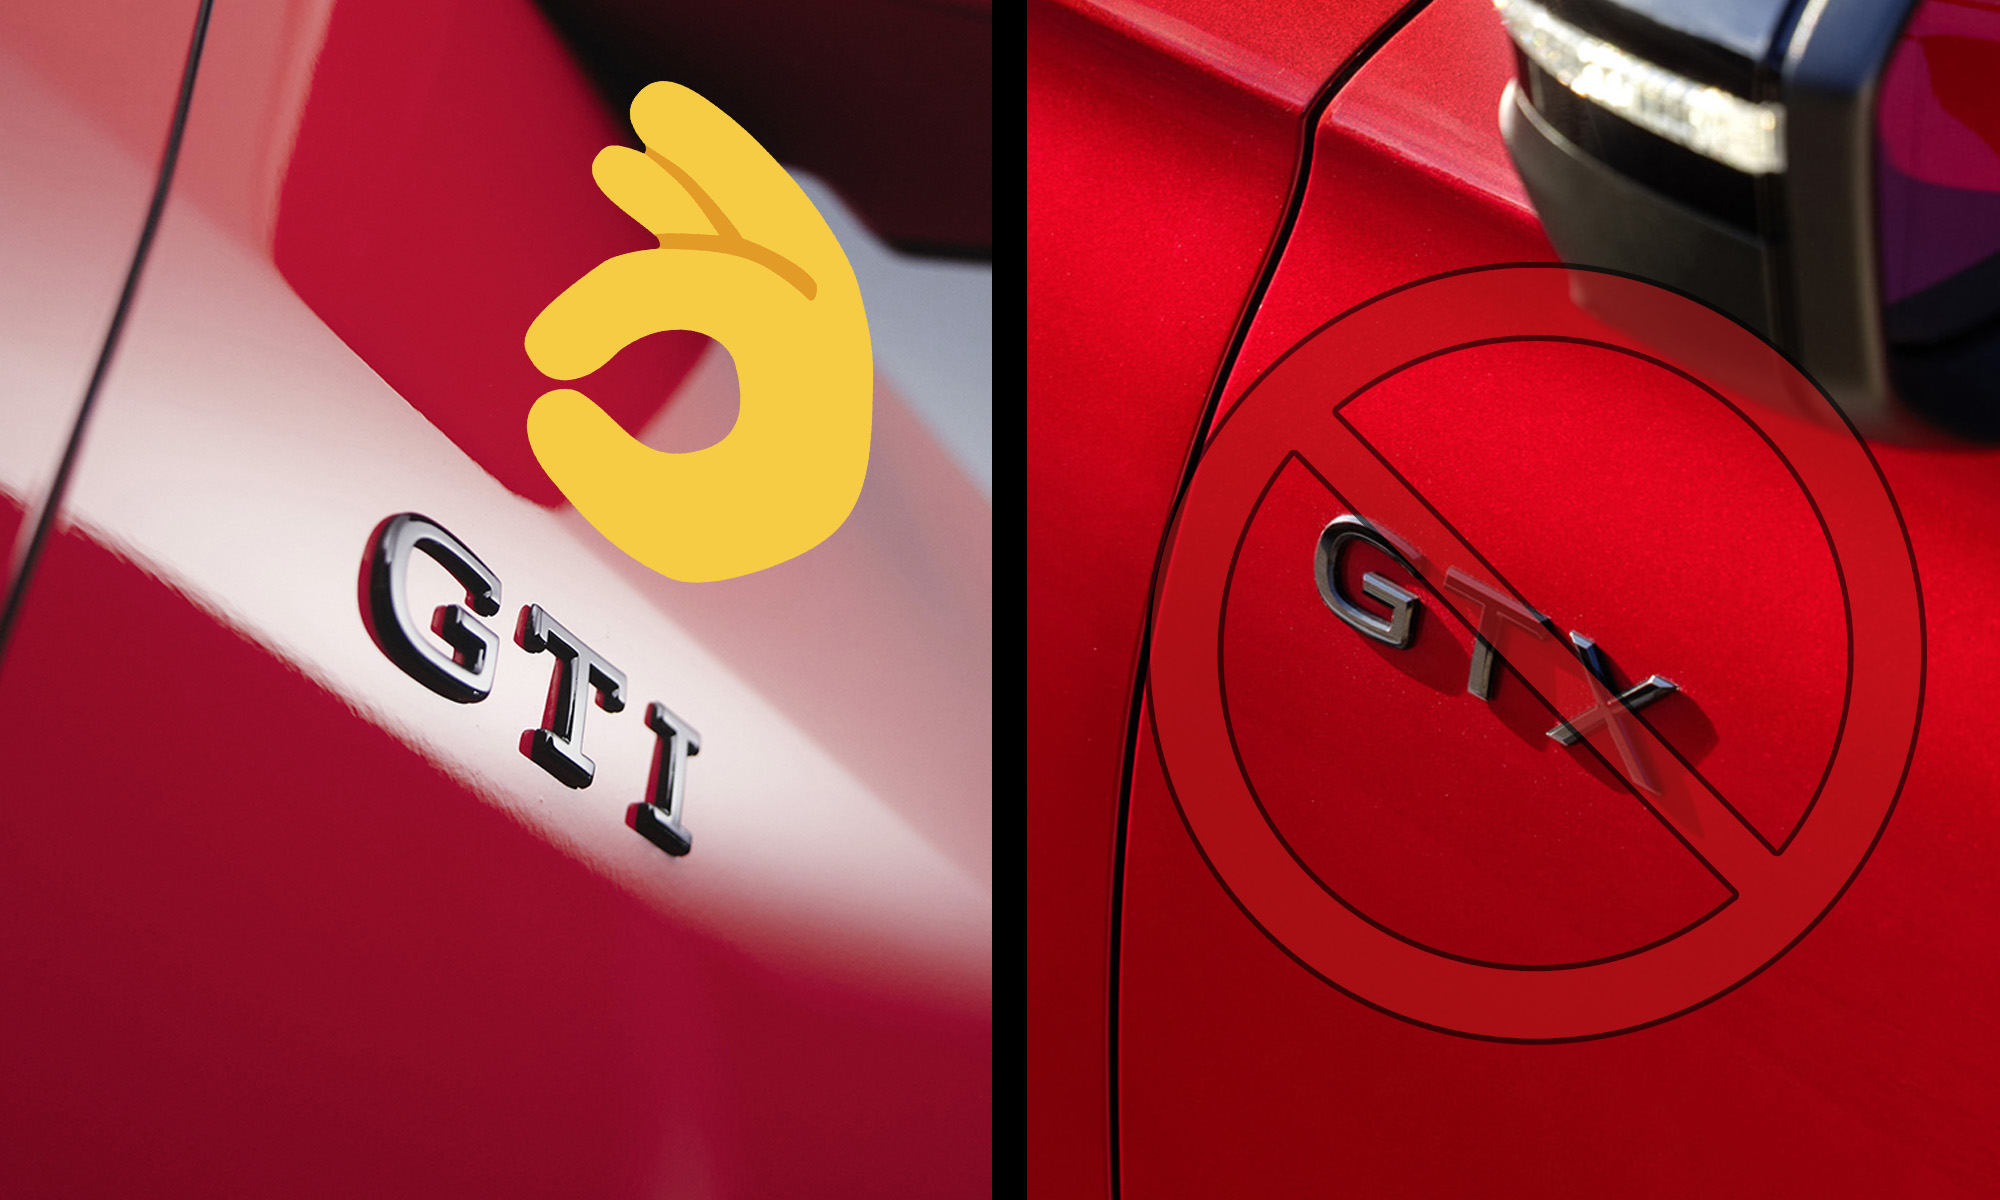 Volkswagen definirá en los próximos años el posicionamiento de 'GTI' y 'R', así como la eliminación de 'GTX'.